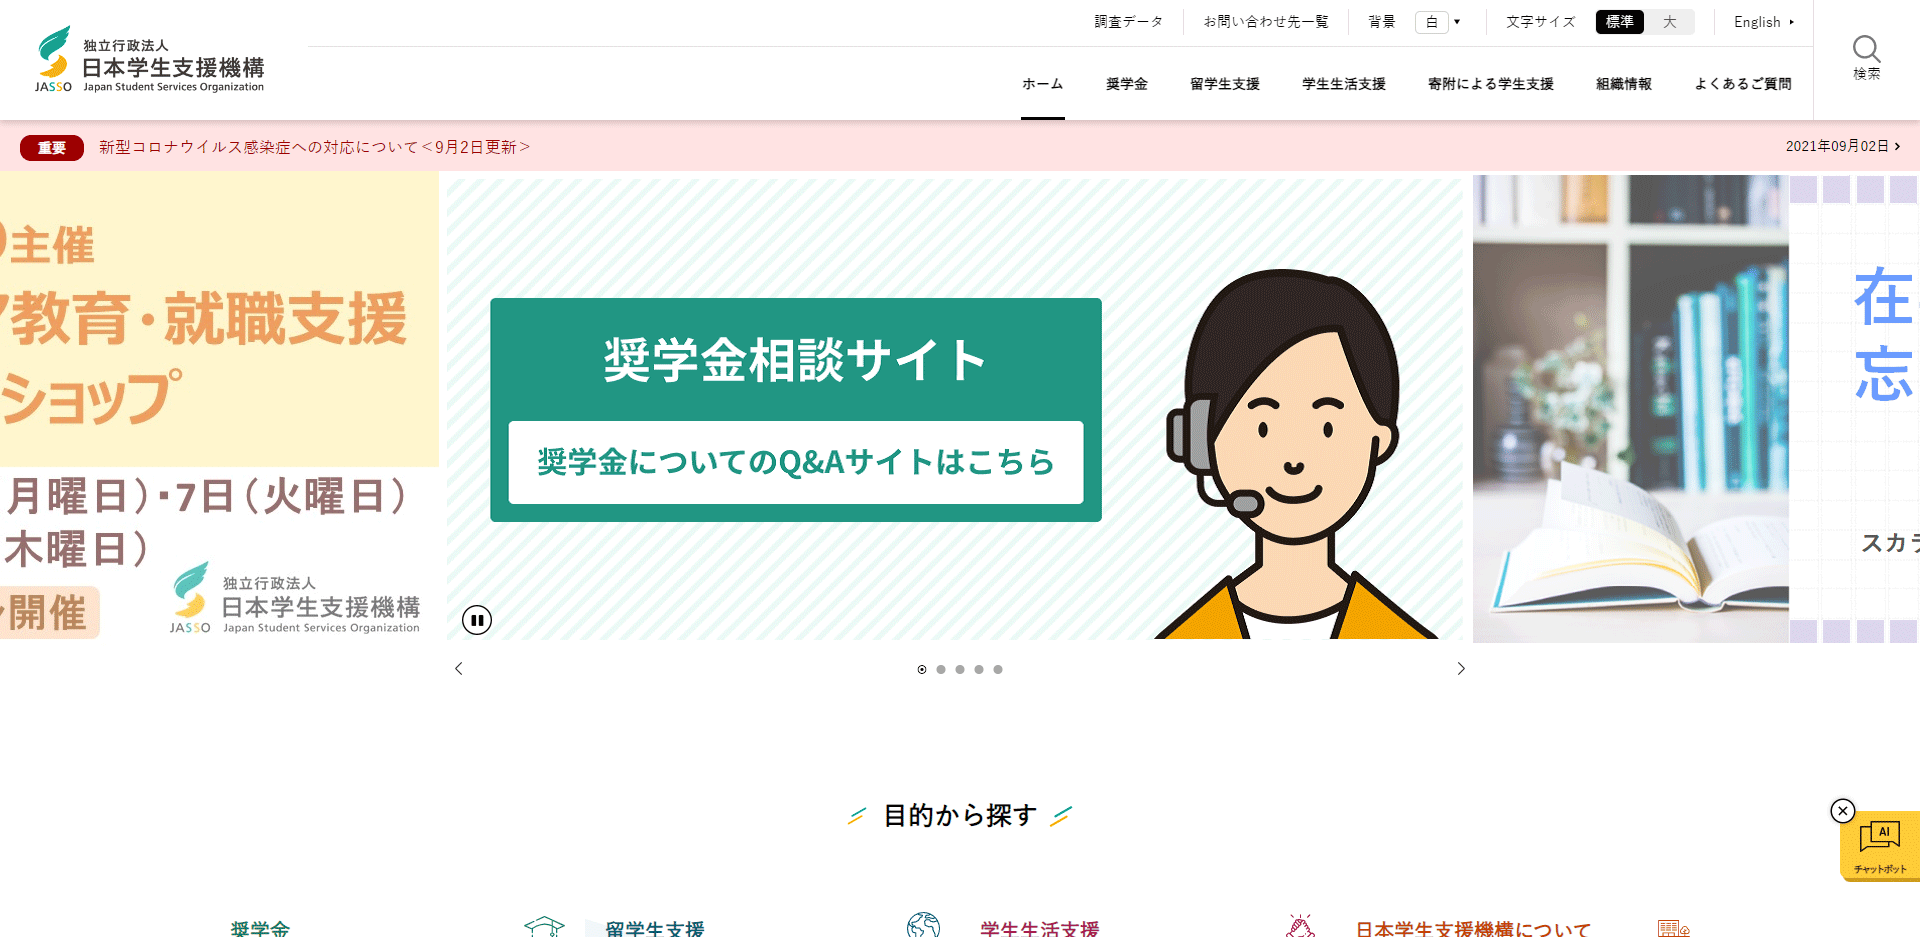 日本学生支援機構のホームページのスクリーンショット